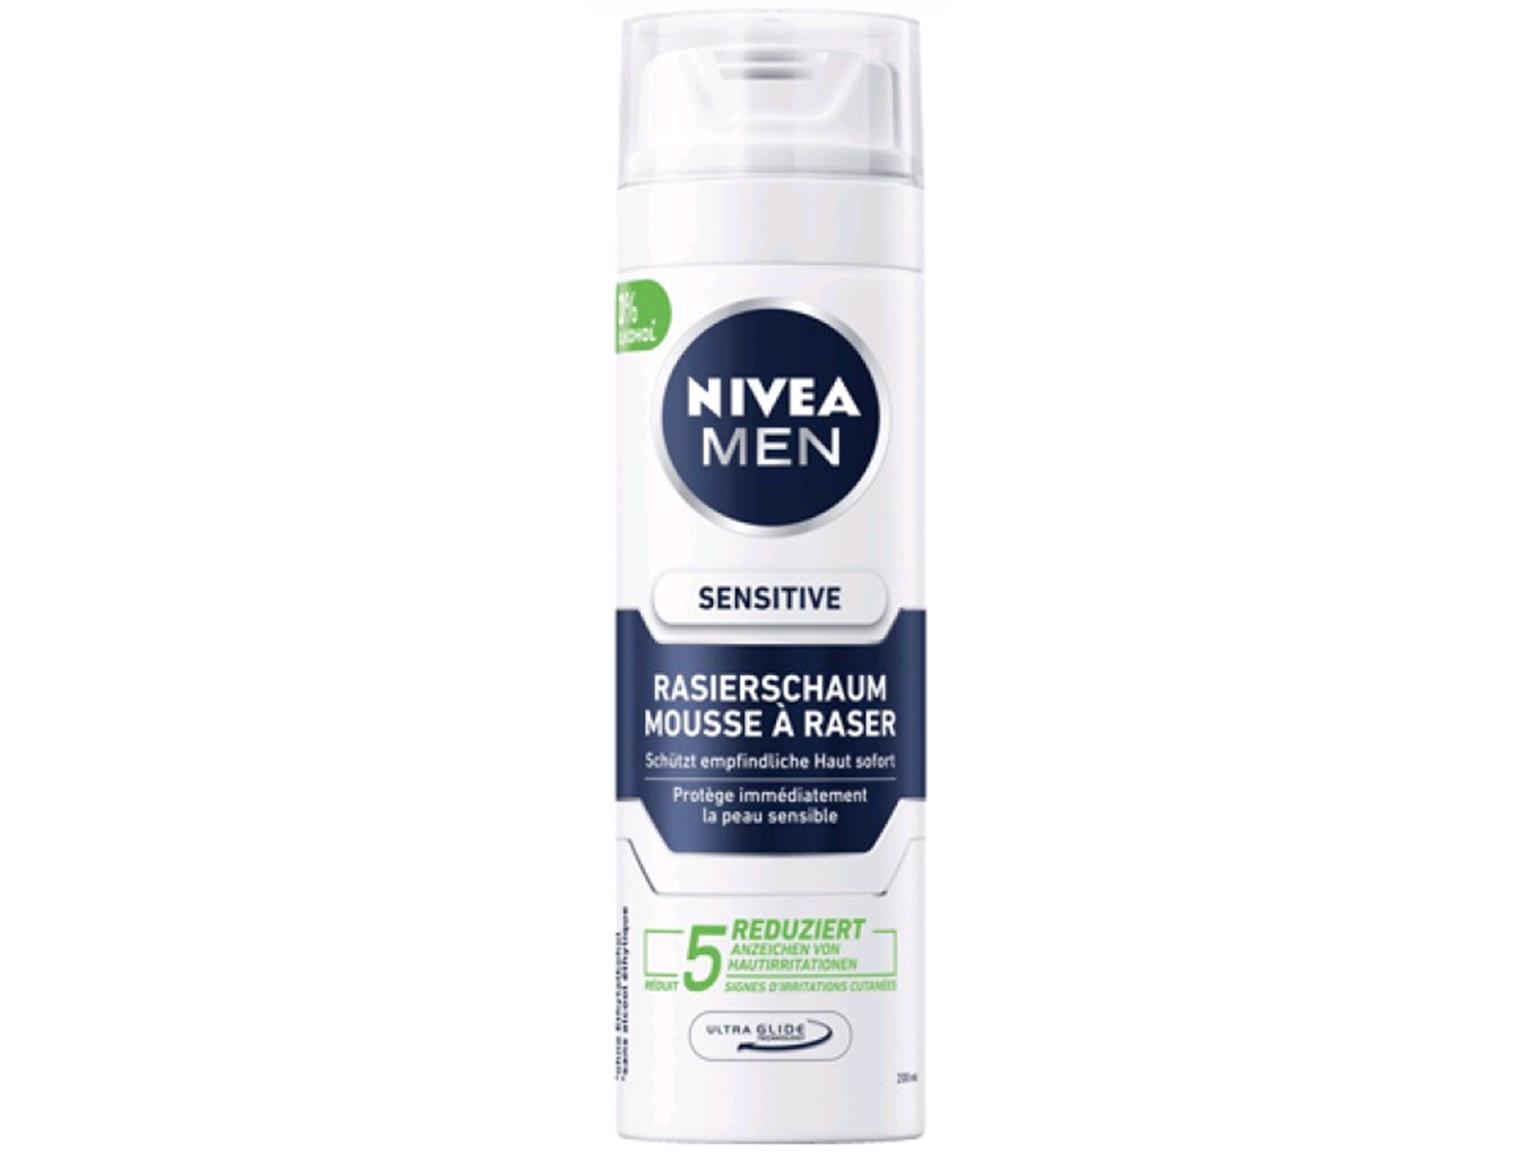 Nivea Rasierschaum 200 ml Sensitive, schützt empfindliche Haut